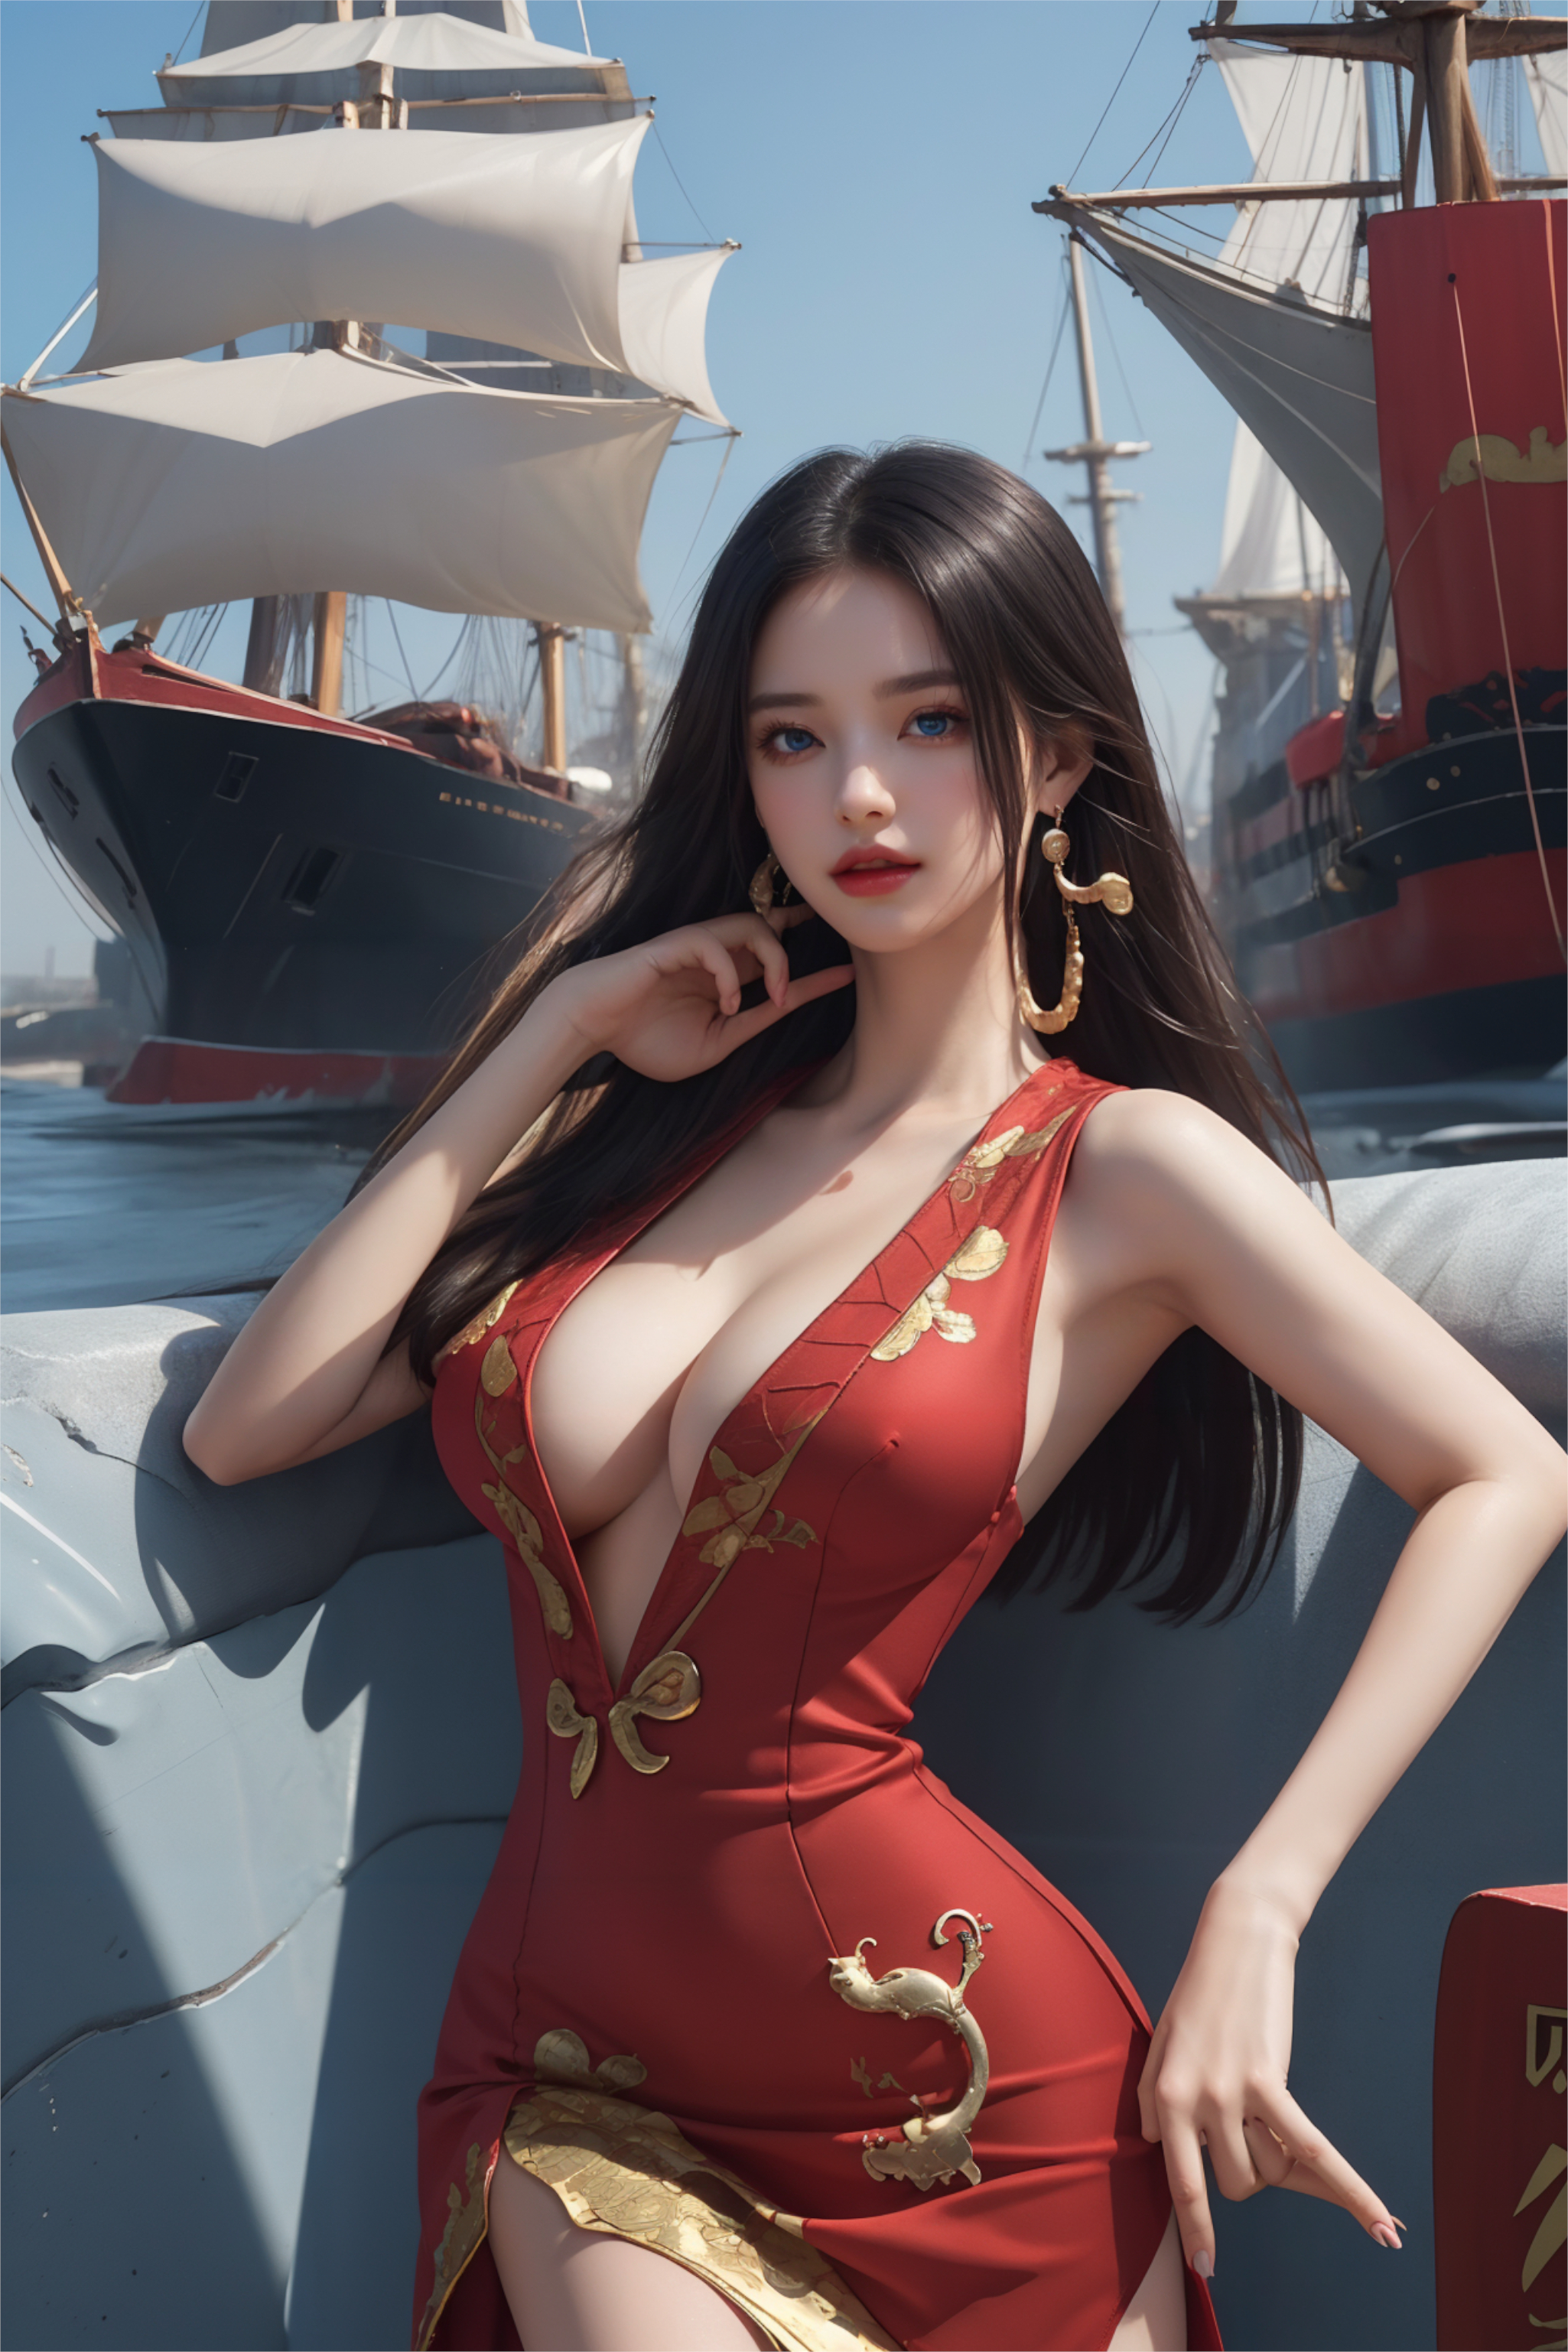 一幅以船只为背景的女孩图画